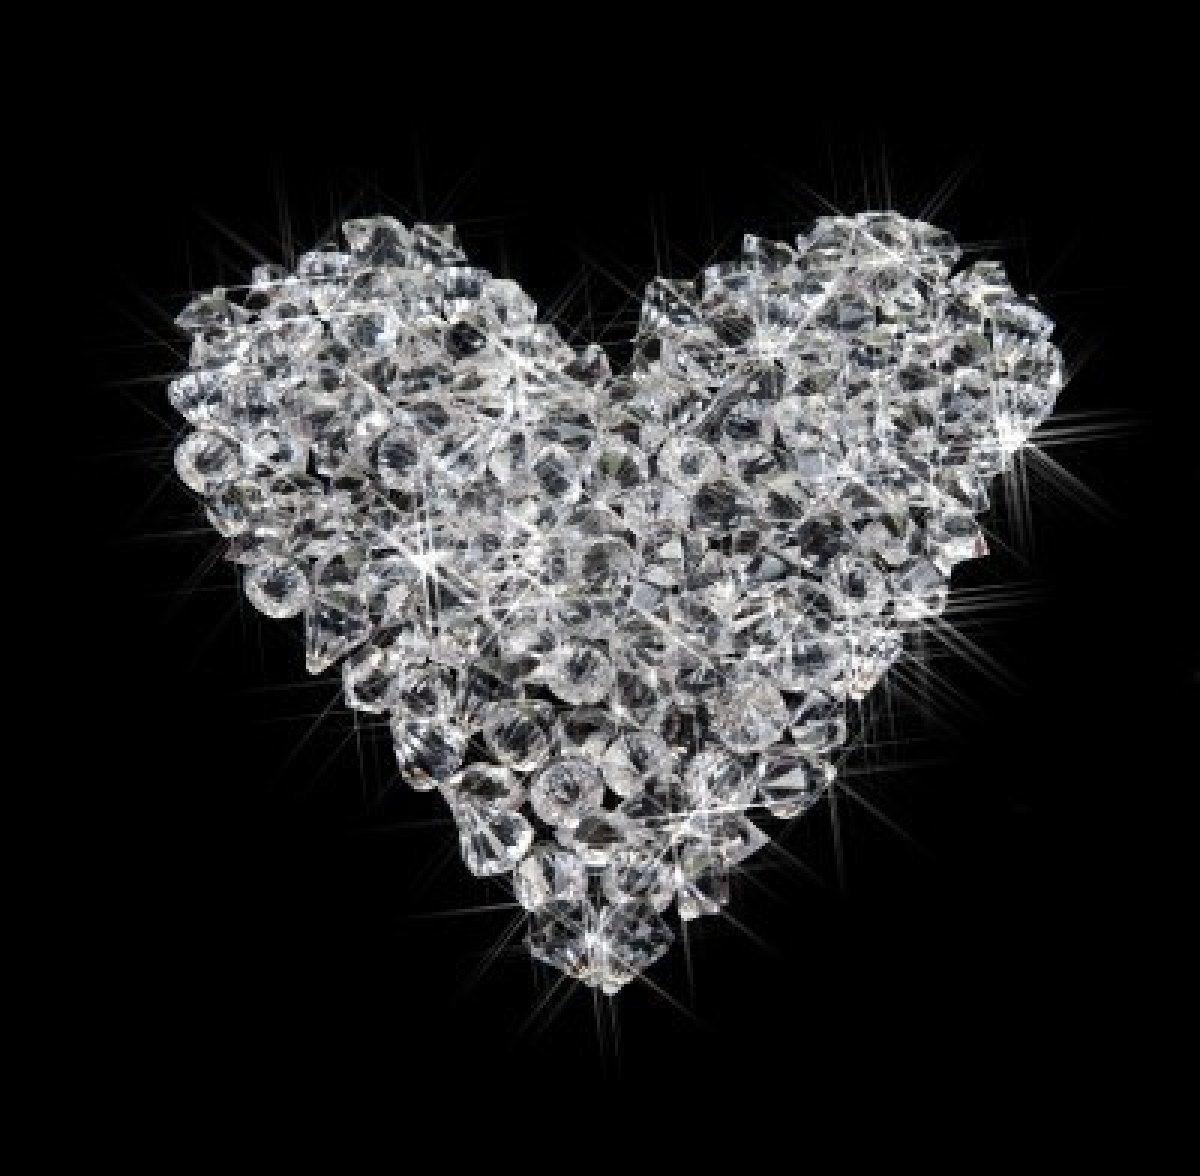 Diamante 1.5-14 Mm Cuentas Semi Perla Decoradas Perlas Color 